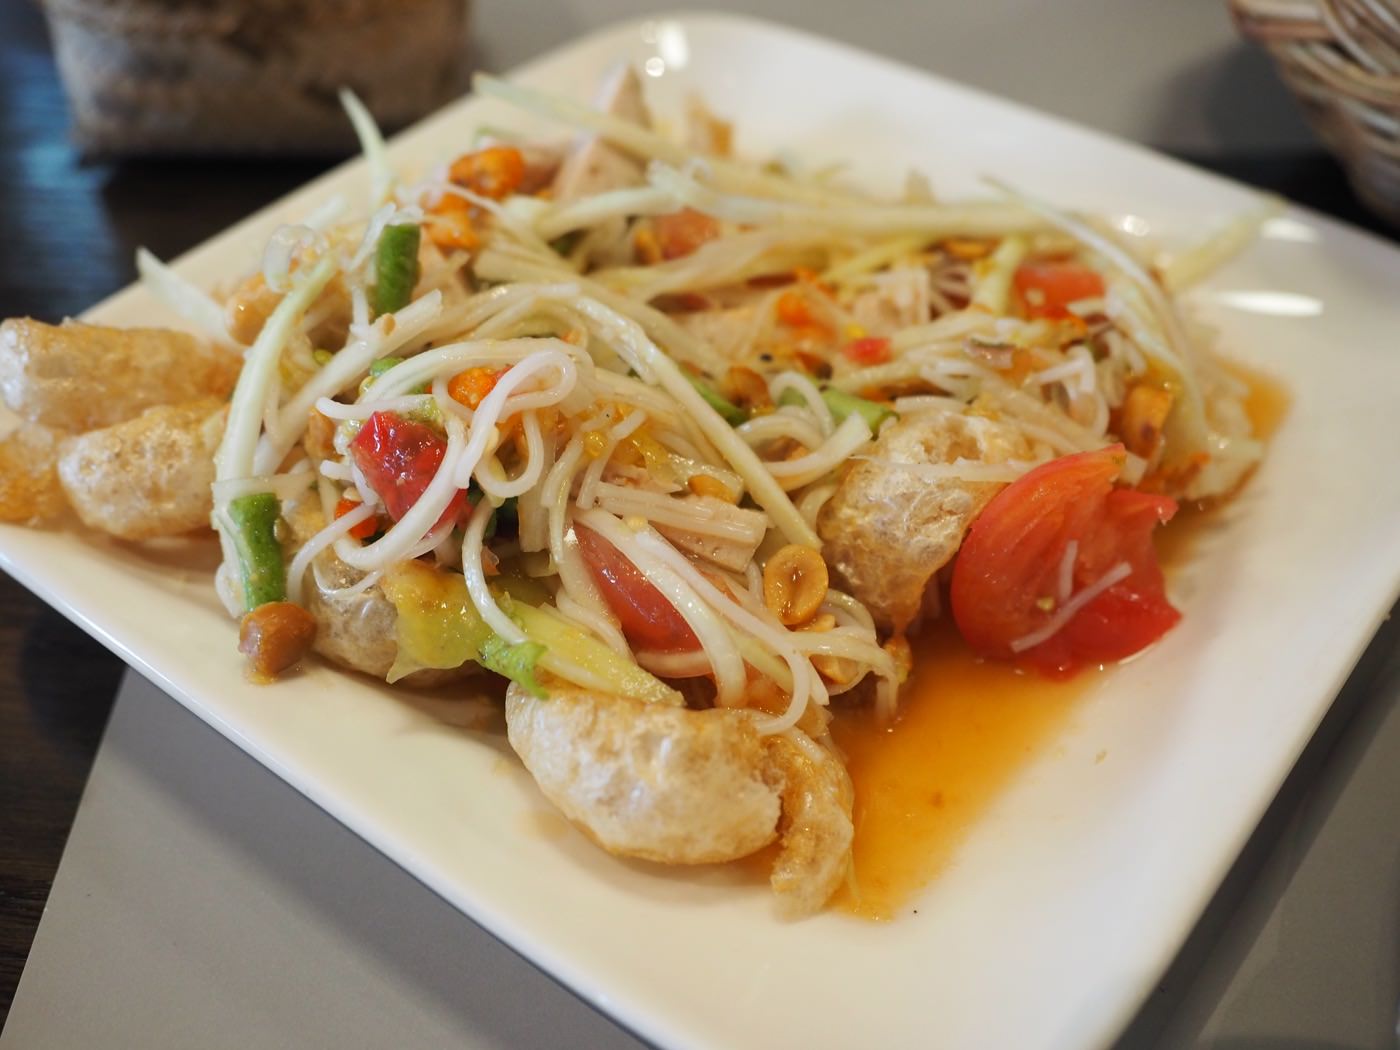 曼谷美食 Som Tam Nua @ Central World 3F 一樣美味的青木瓜沙拉與炸雞翅 - 一口冒險 Bitesized Adventure